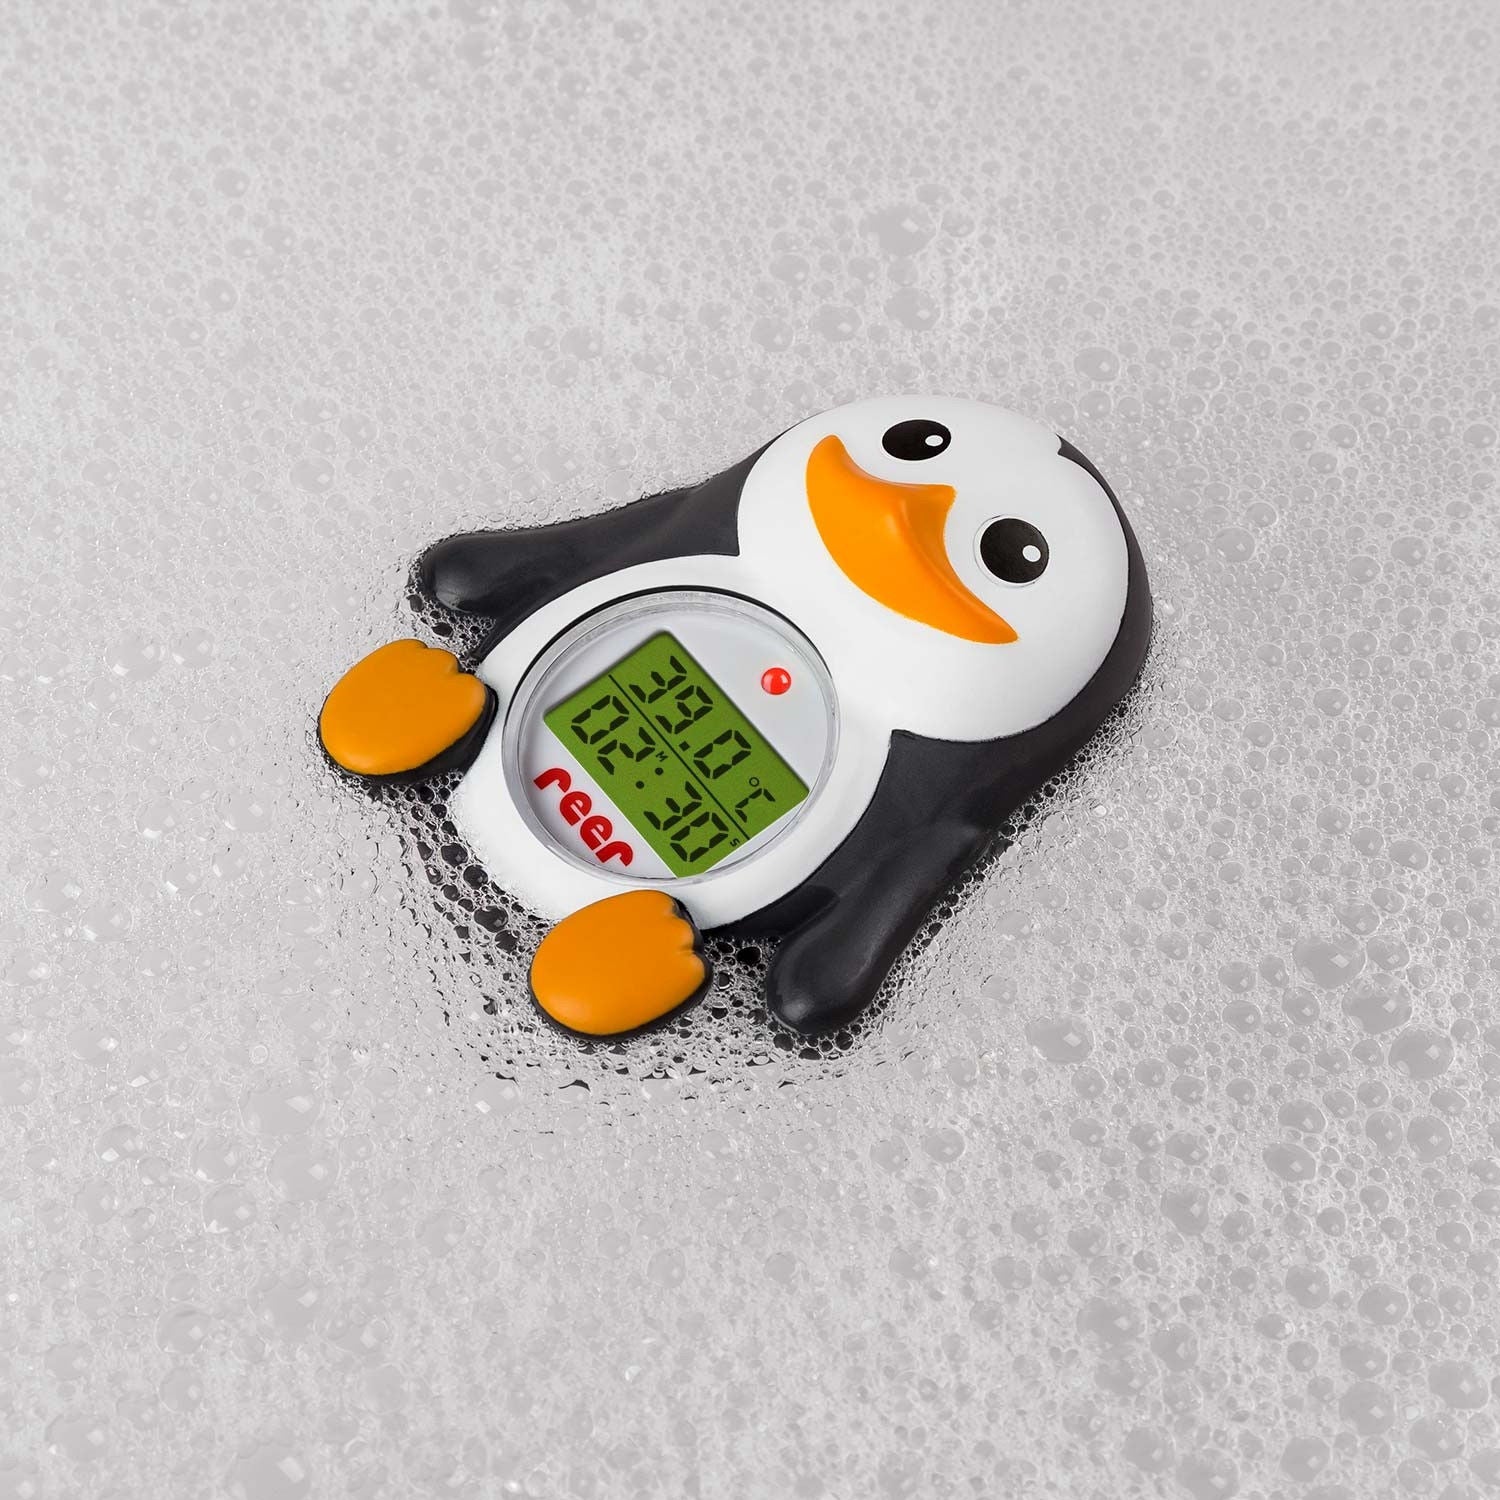 Découvrez le thermomètre de bain Mininor sur Babykare.fr